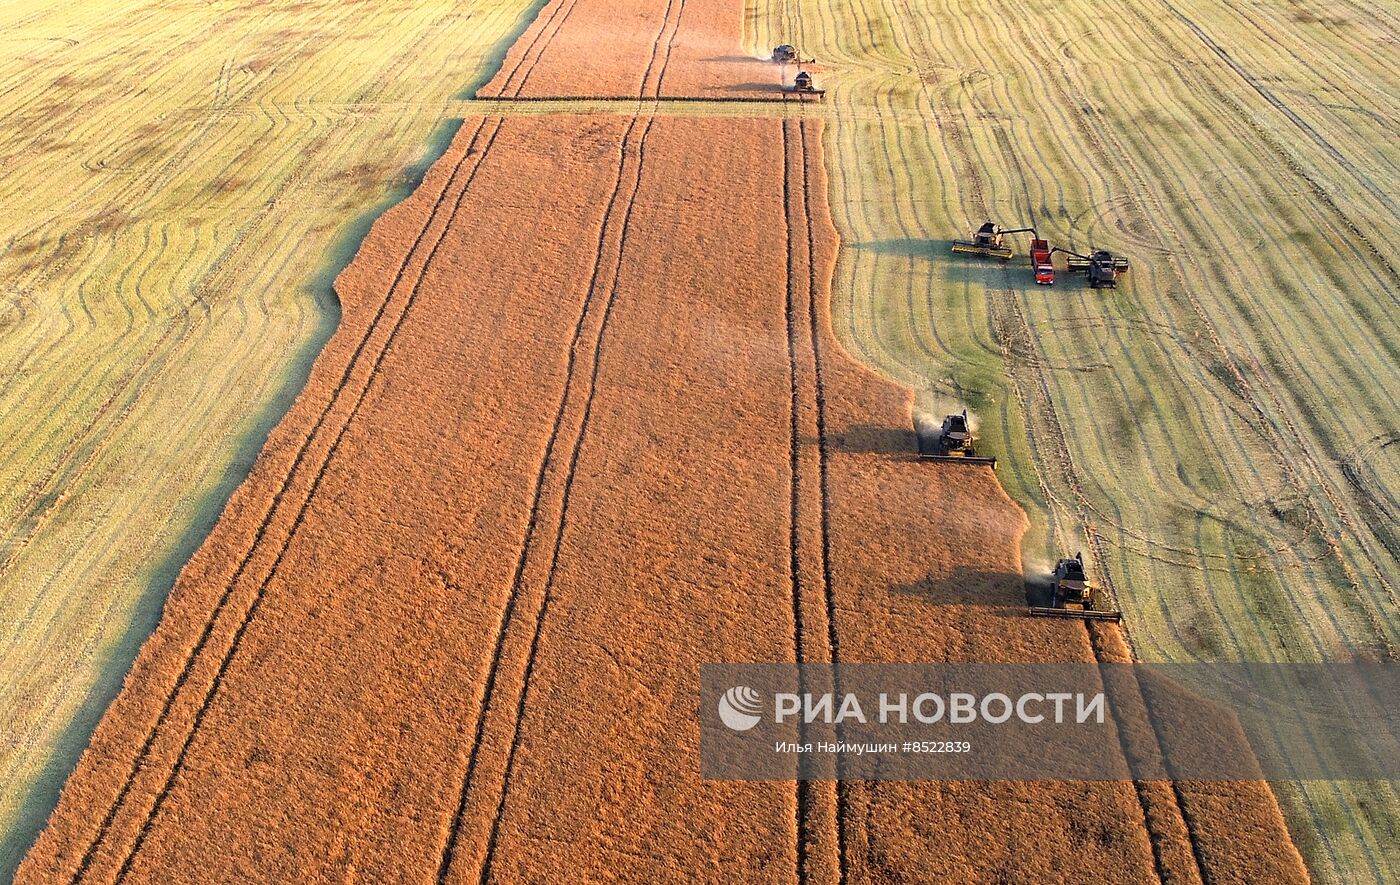 Сбор урожая рапса в Красноярском крае